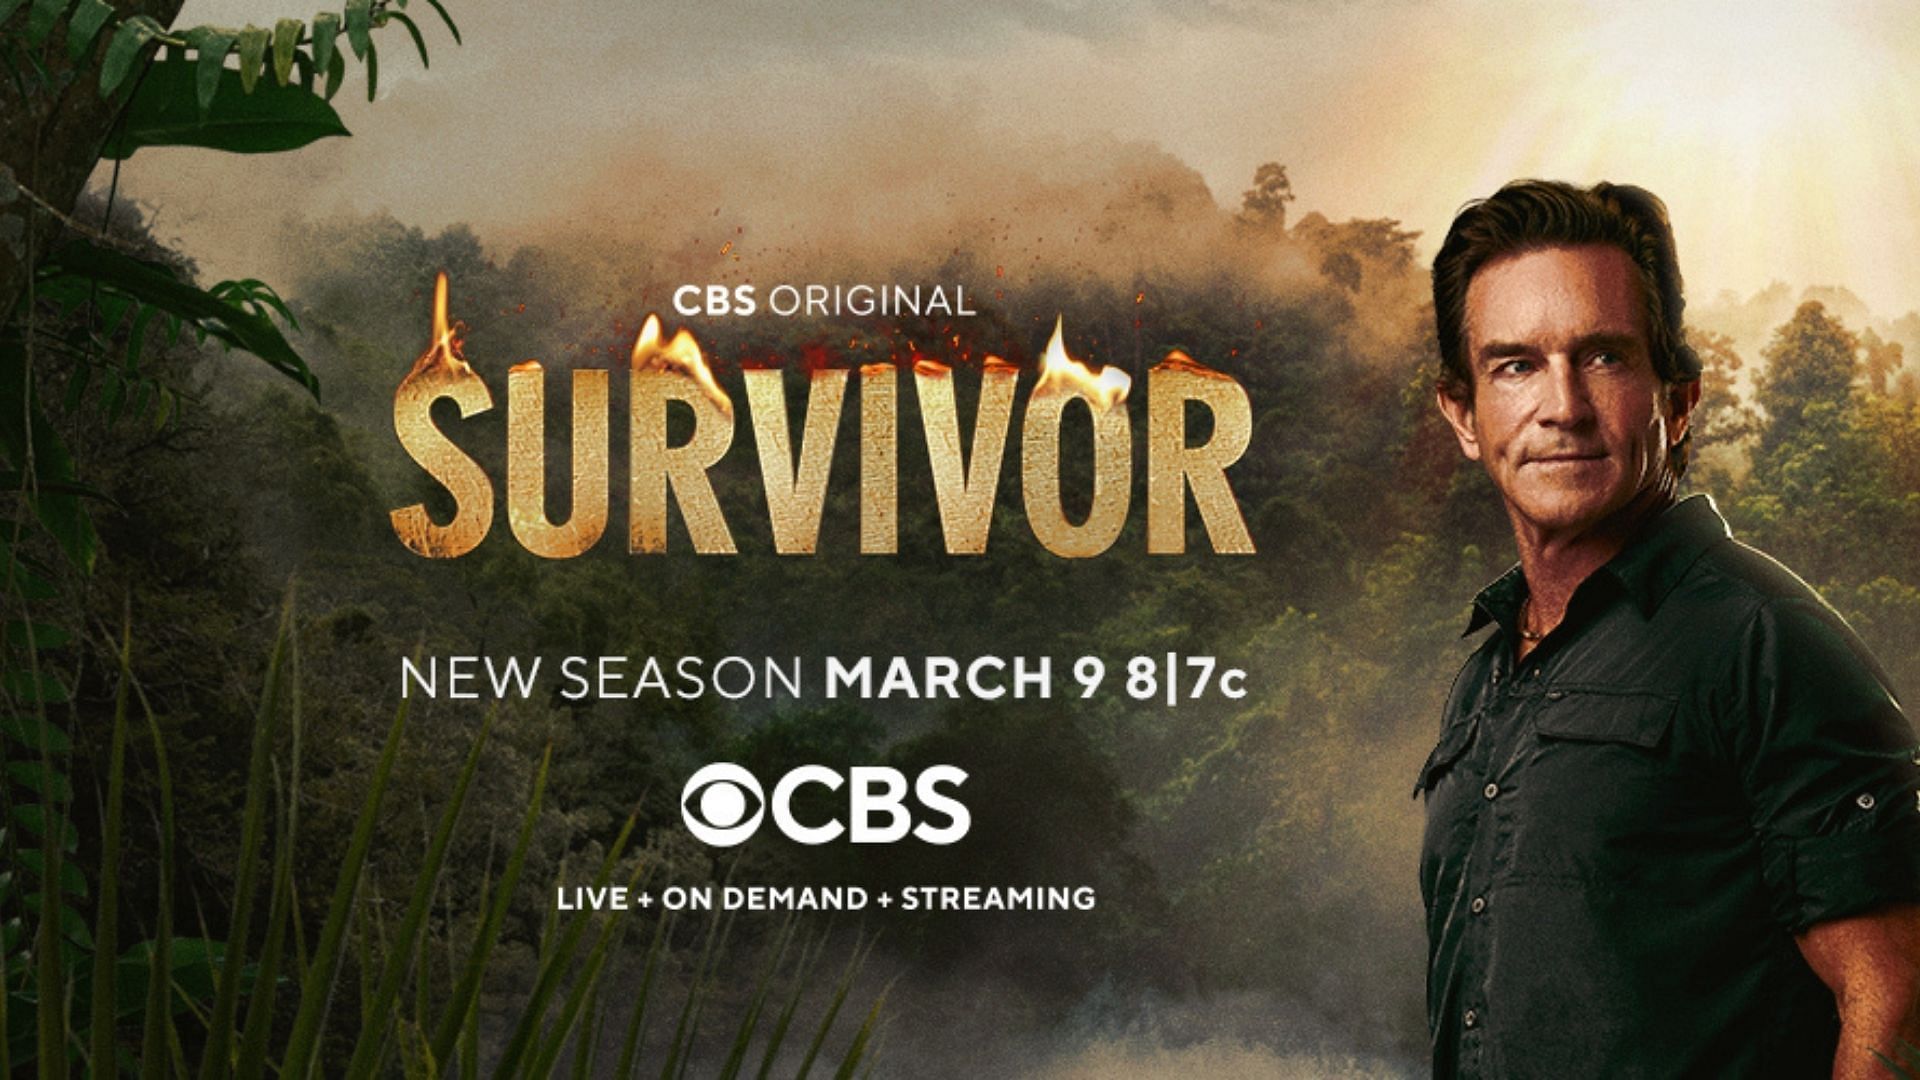 Who Won 'Survivor' Season 42? - 'Survivor' Season 42 Eliminations